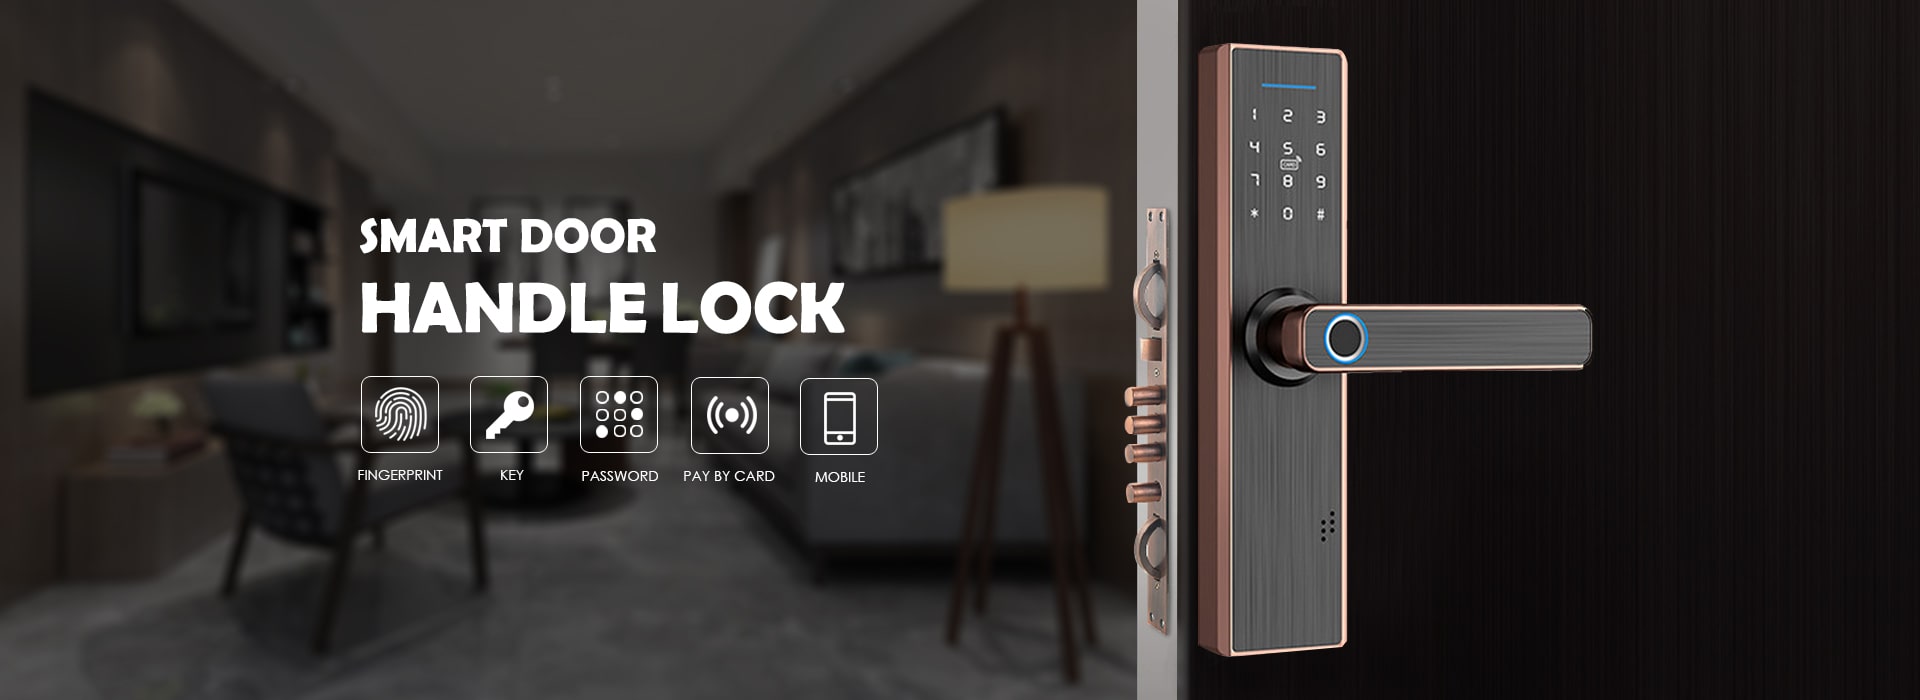 Smart Door Handle Lock Manufacturers